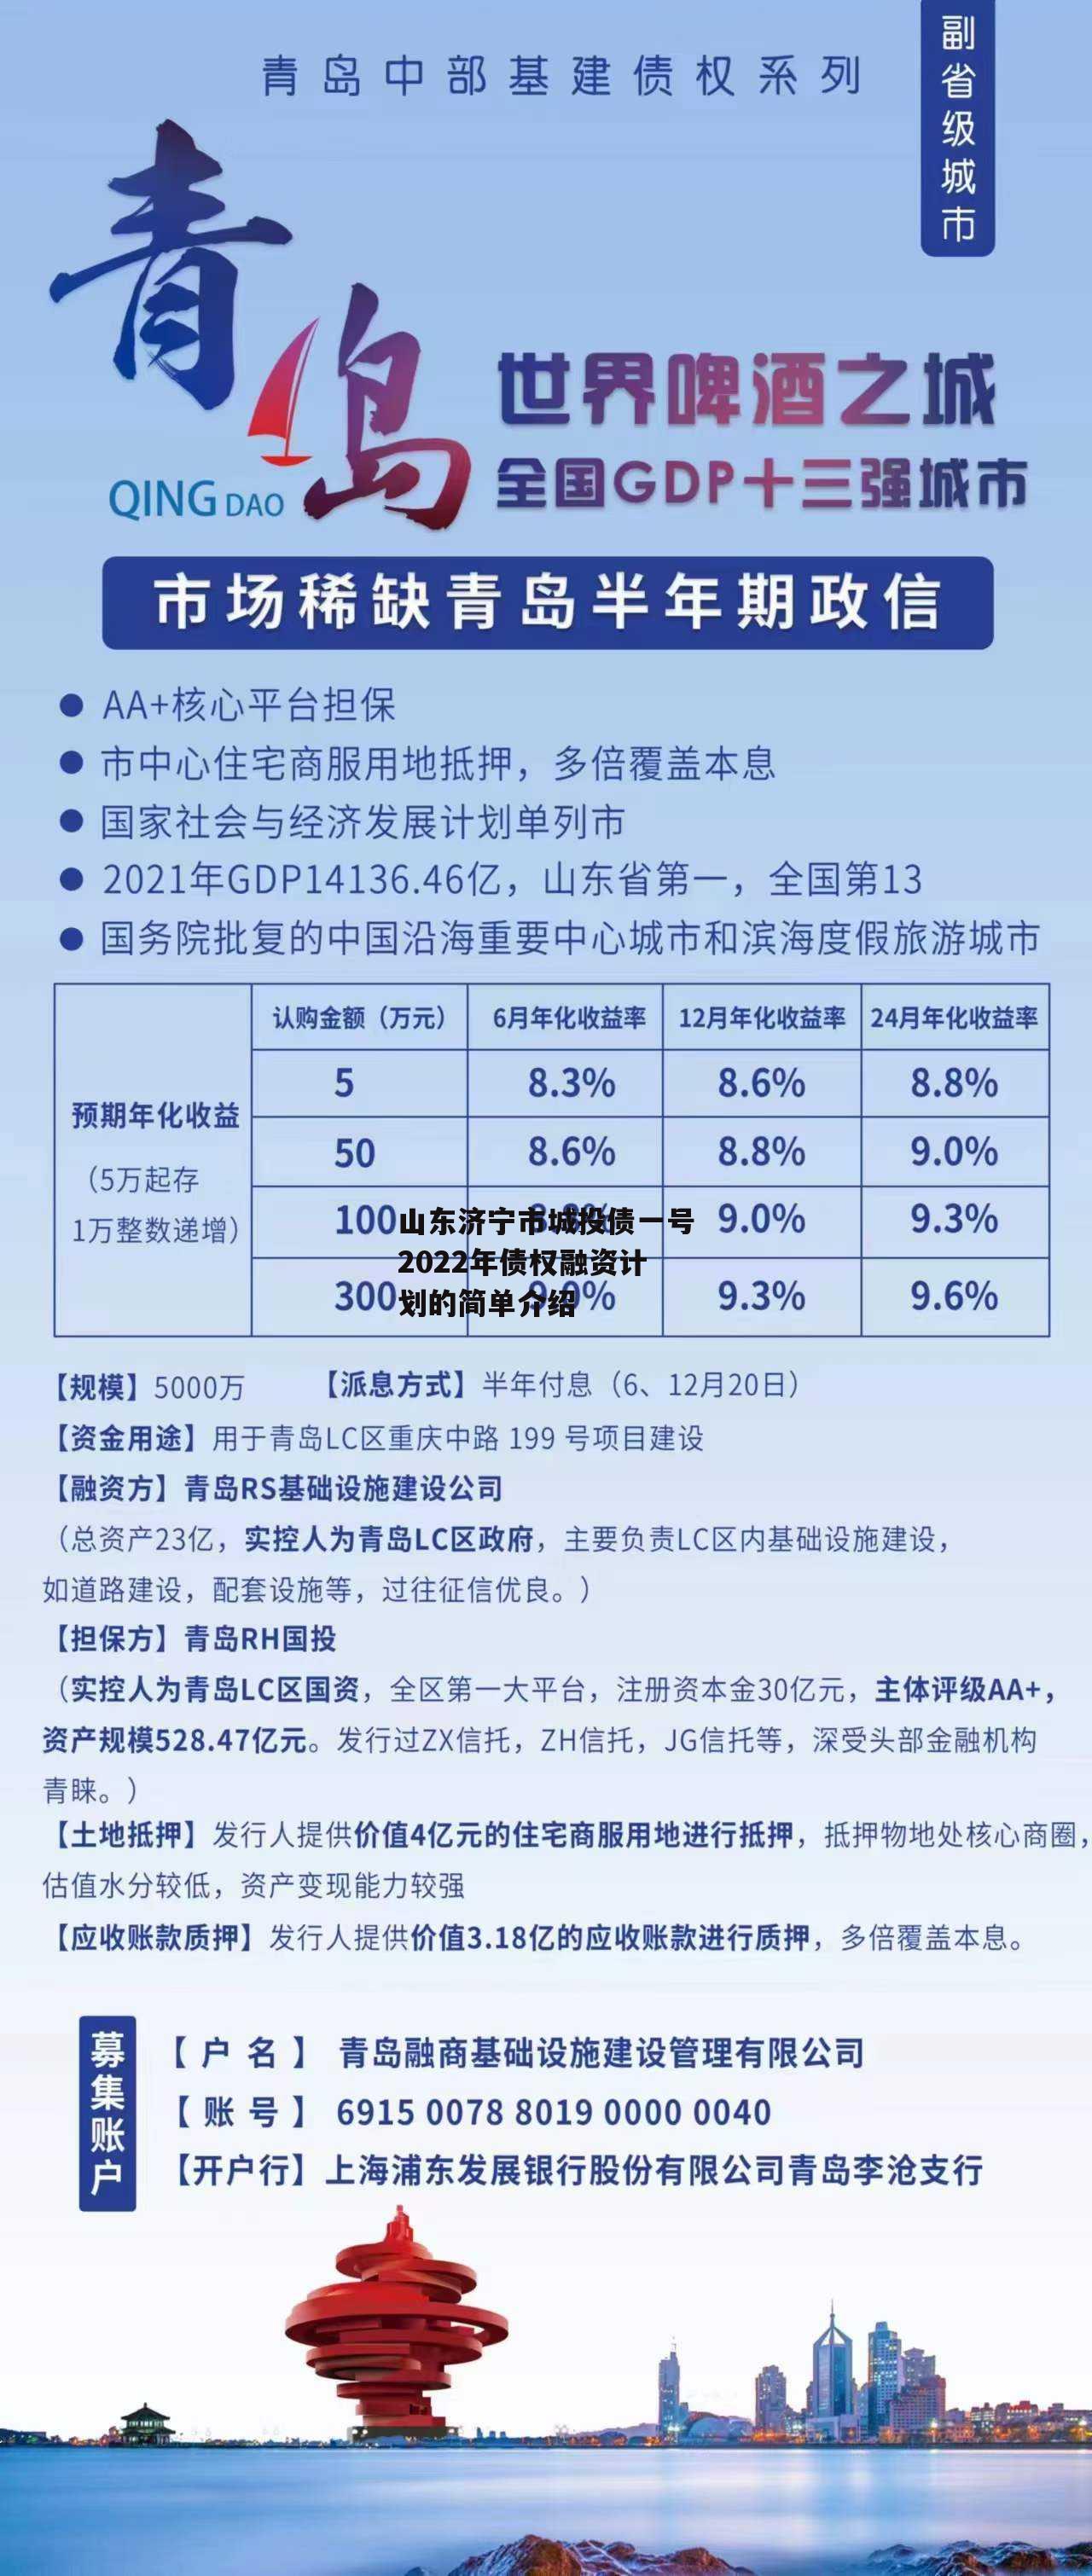 山东济宁市城投债一号2022年债权融资计划的简单介绍